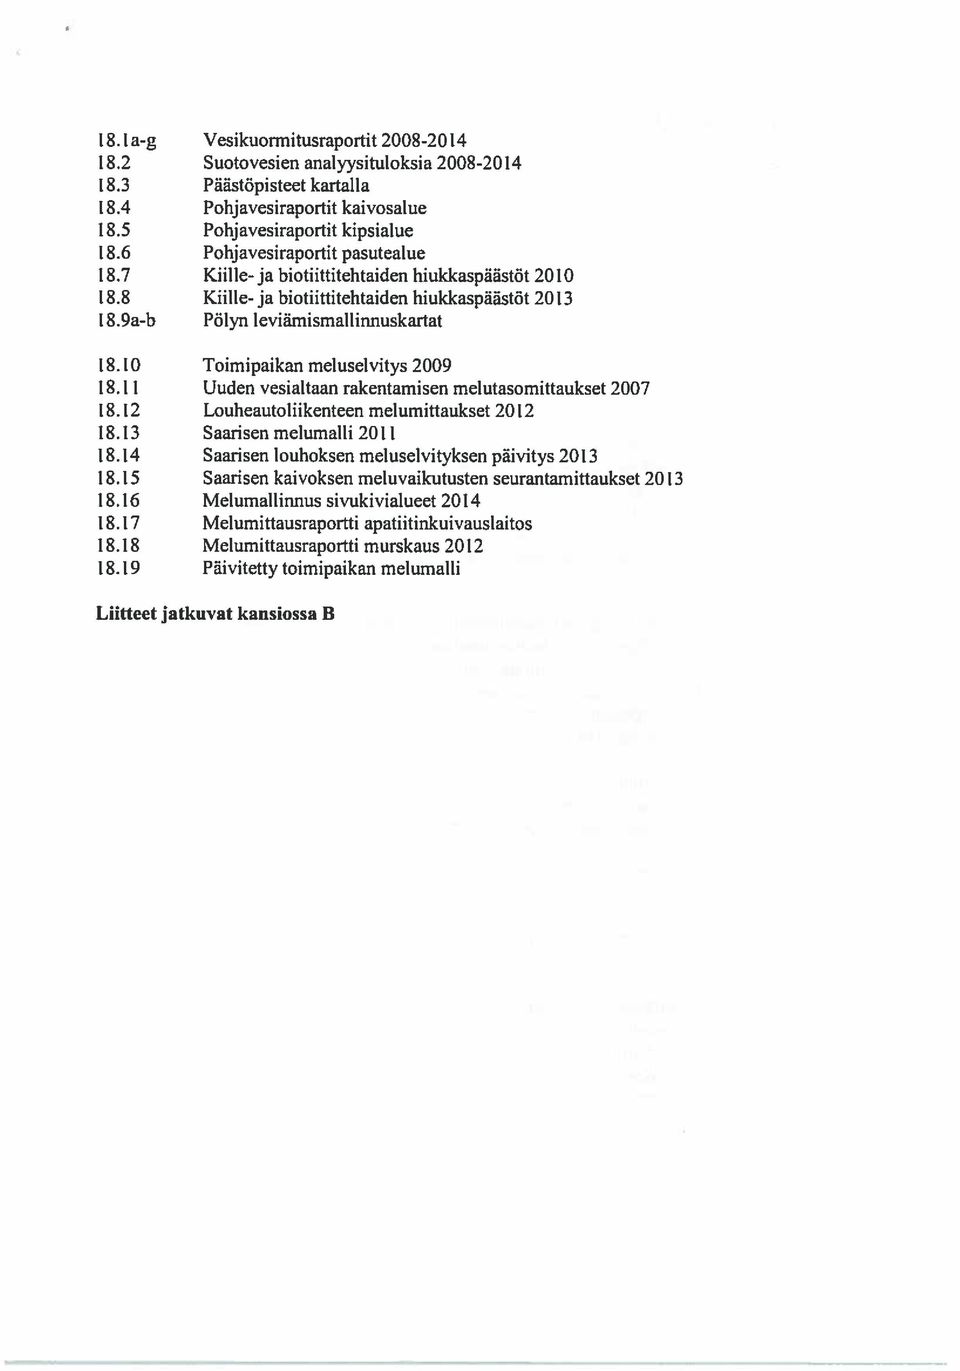 10 Toimipaikan meluselvitys 2009 18.11 Uuden vesialtaan rakentamisen melutasomittaukset 2007 18.12 Louheautoliikenteen melumittaukset 2012 18.13 Saarisen melumalli 2011 18.